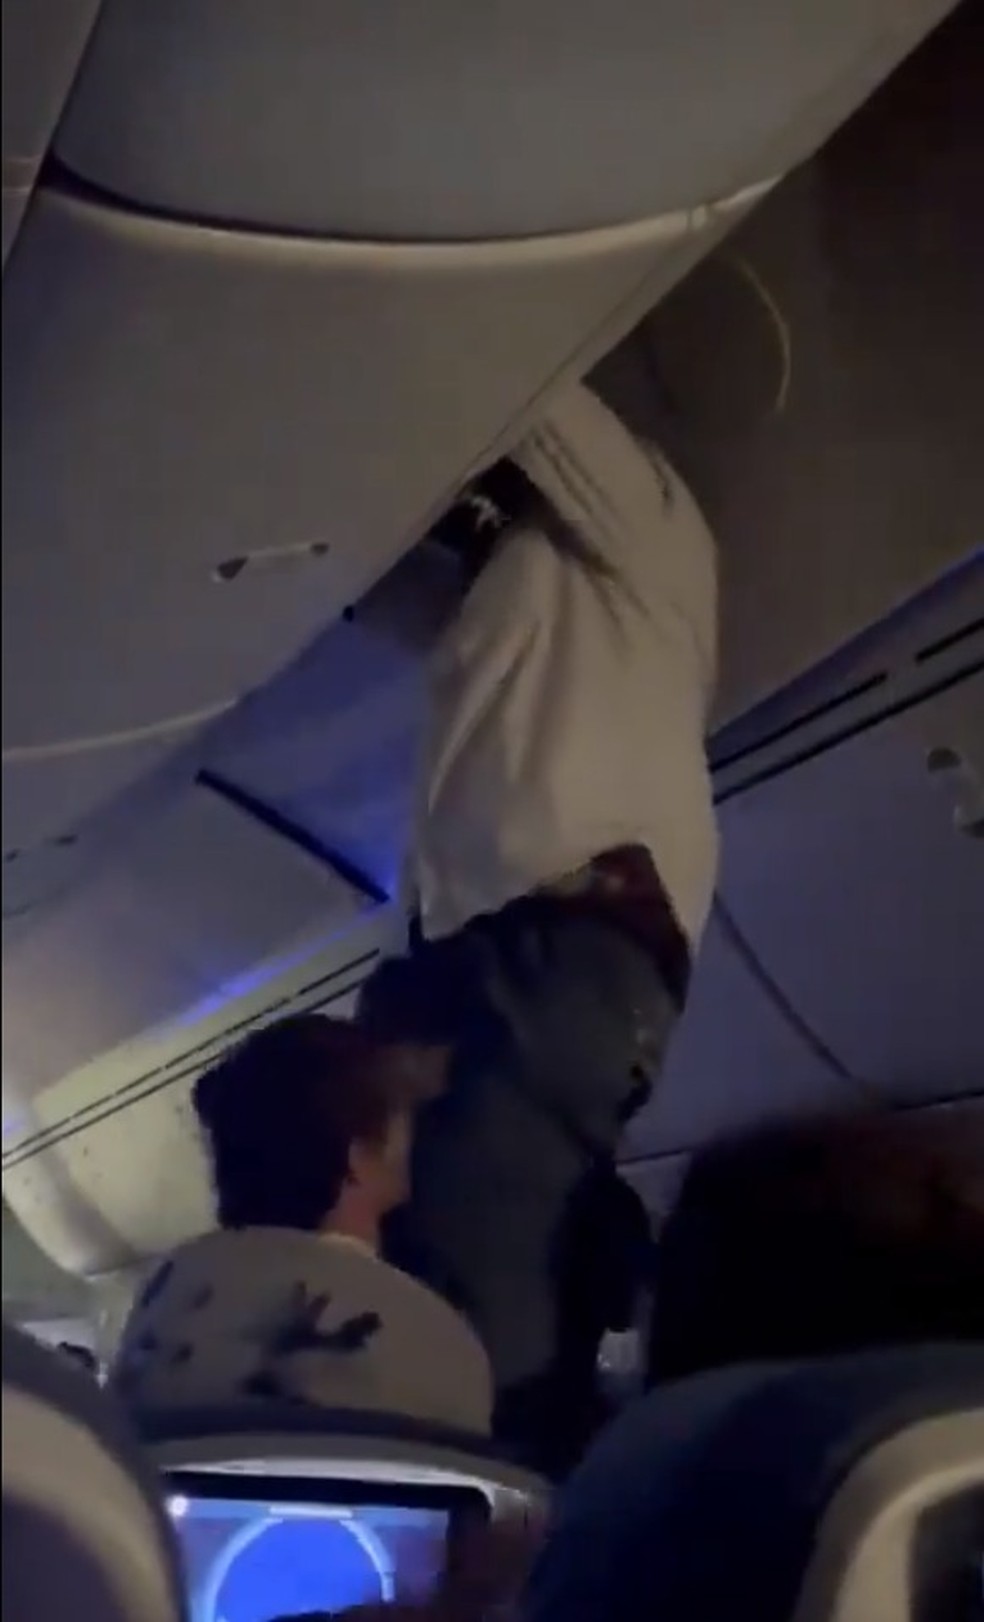 Resgate do passageiro no teto da aeronave — Foto: Reprodução